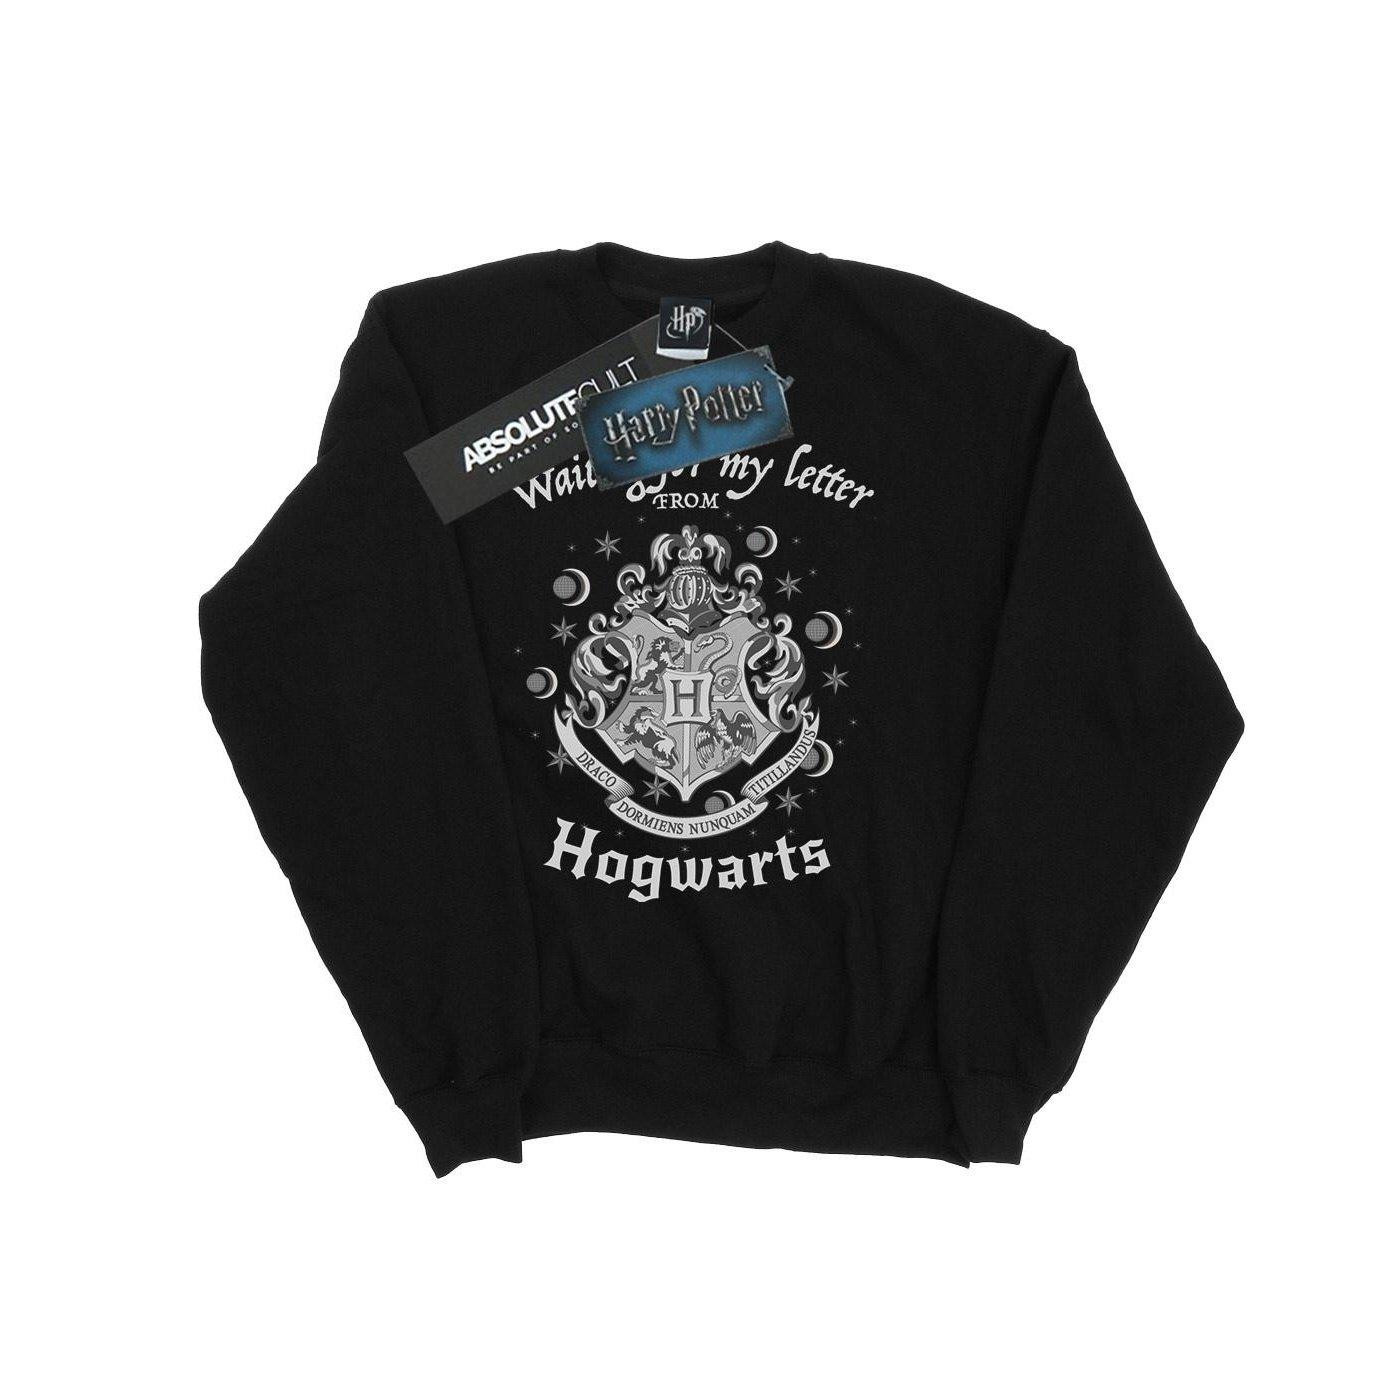 Hogwarts Waiting For My Letter Sweatshirt Unisex Schwarz 152-158 von Harry Potter